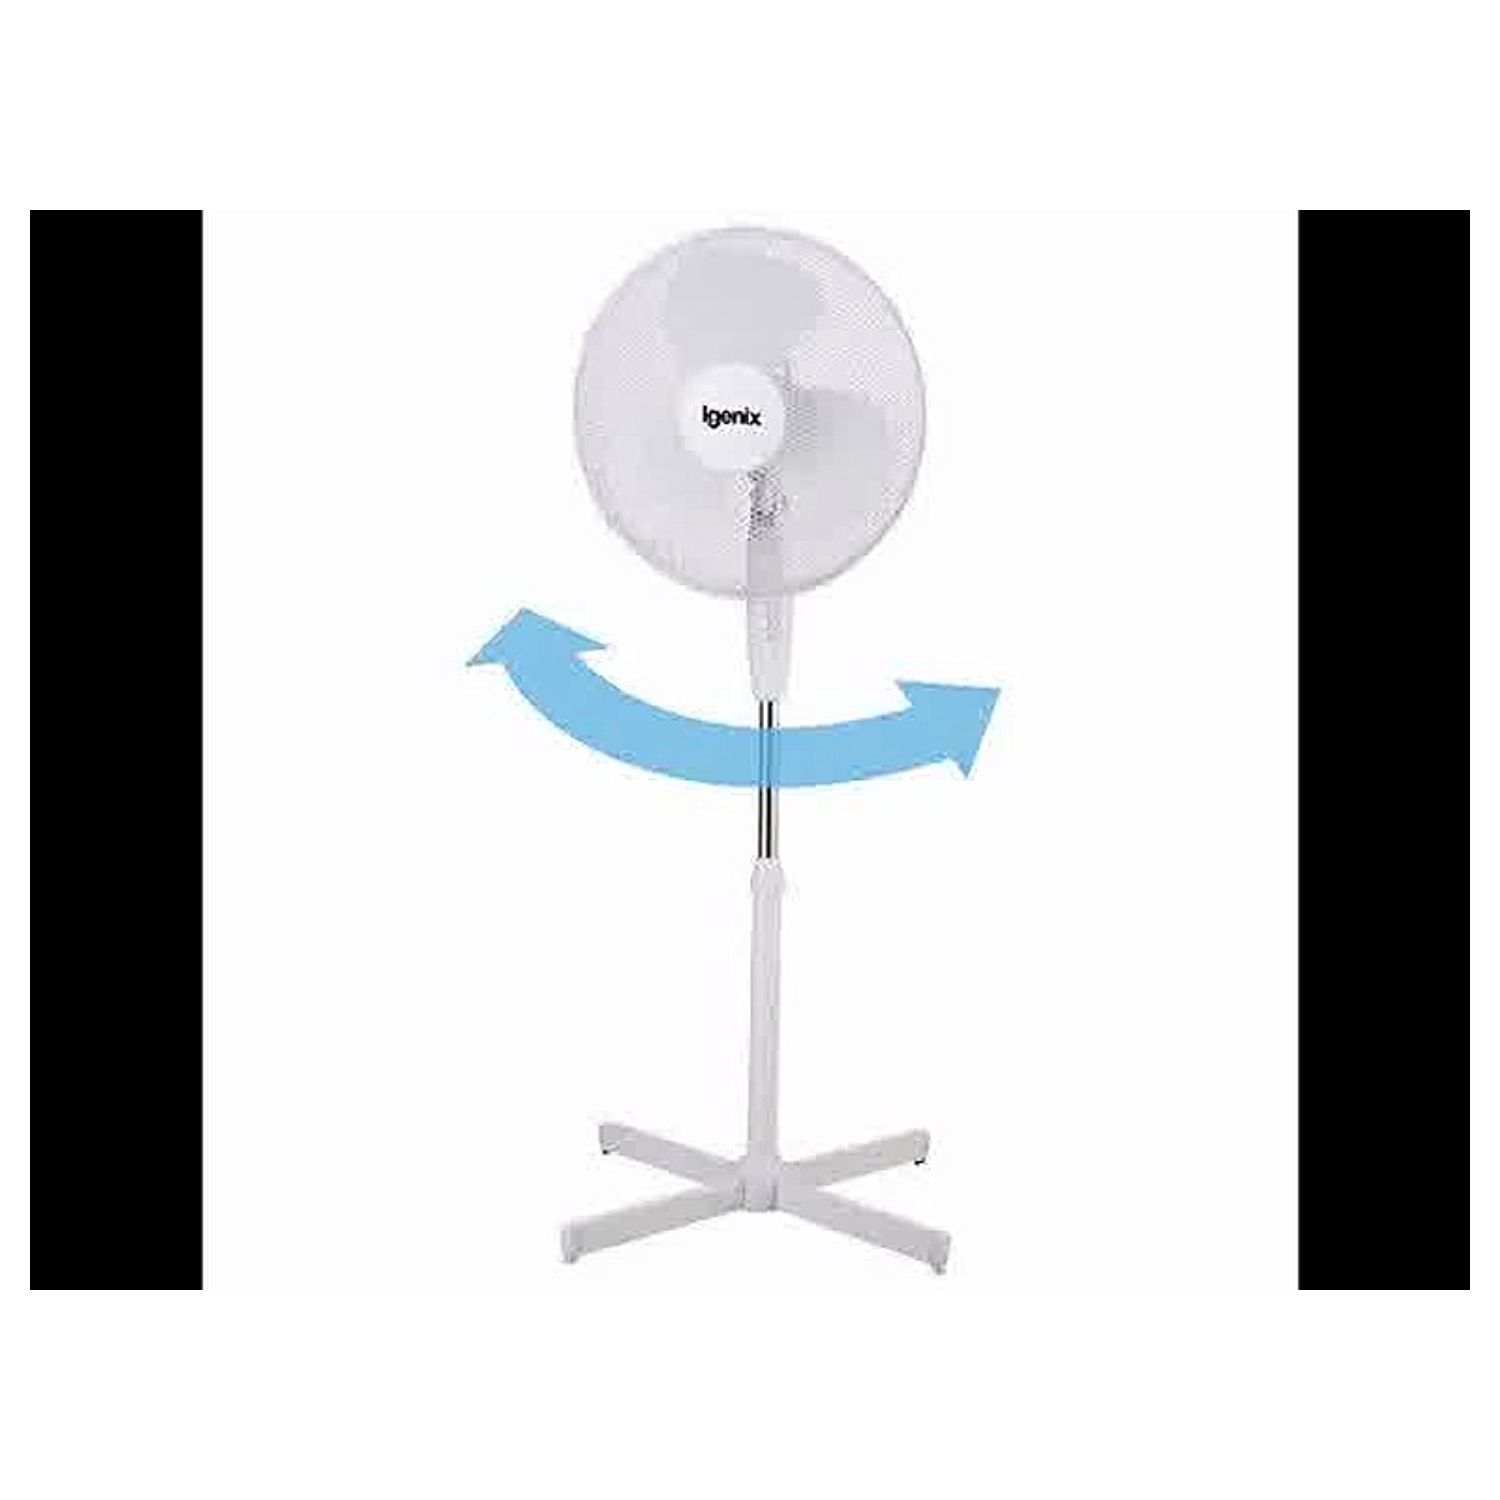 Igenix 16" Pedestal Fan (white) - 2